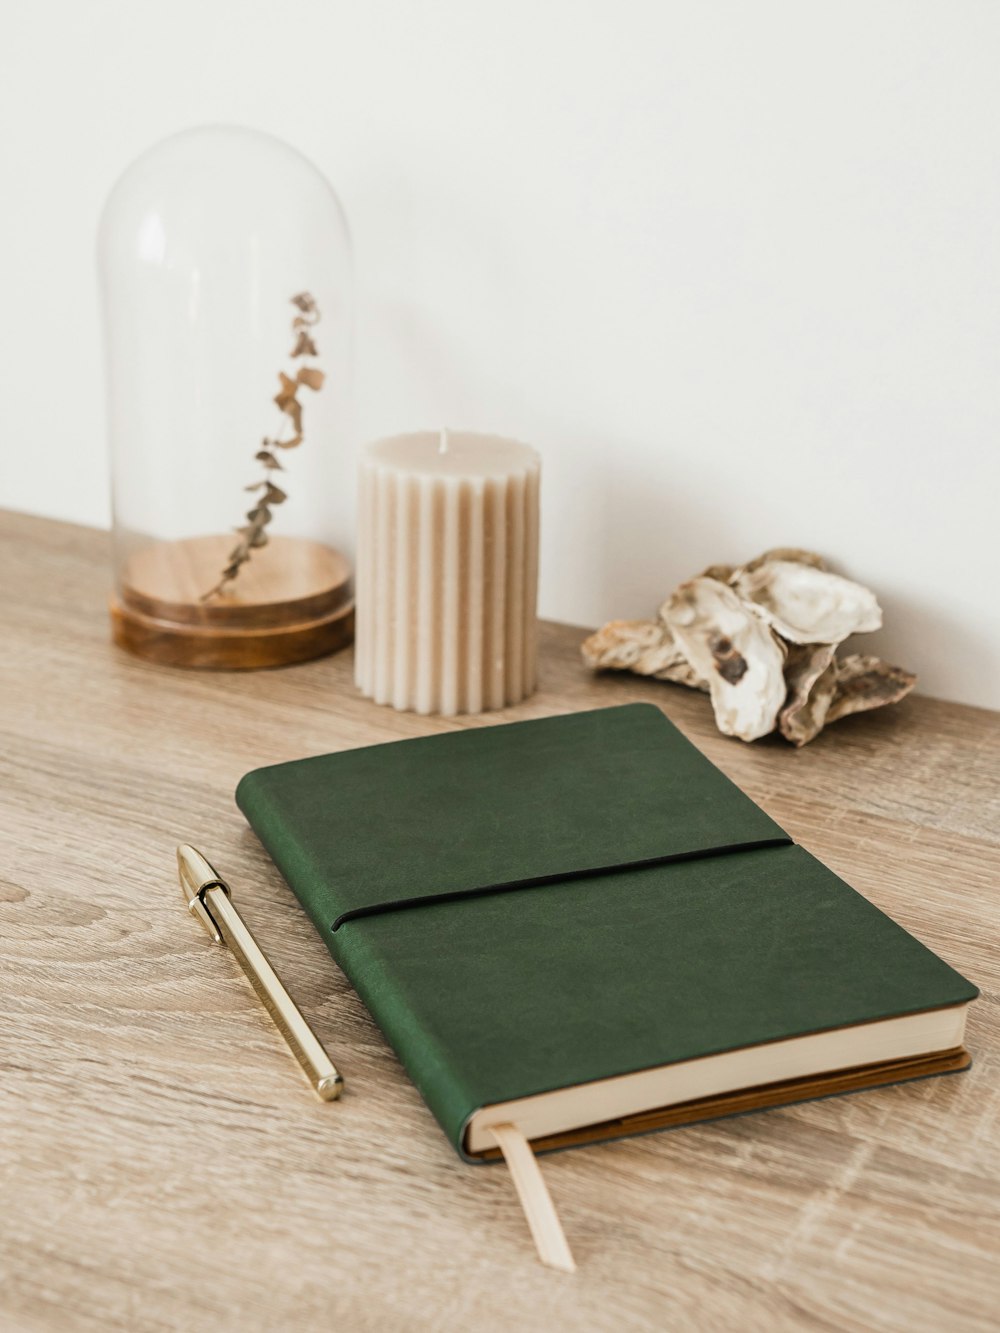 木製のテーブルの上に座っている緑色のノート